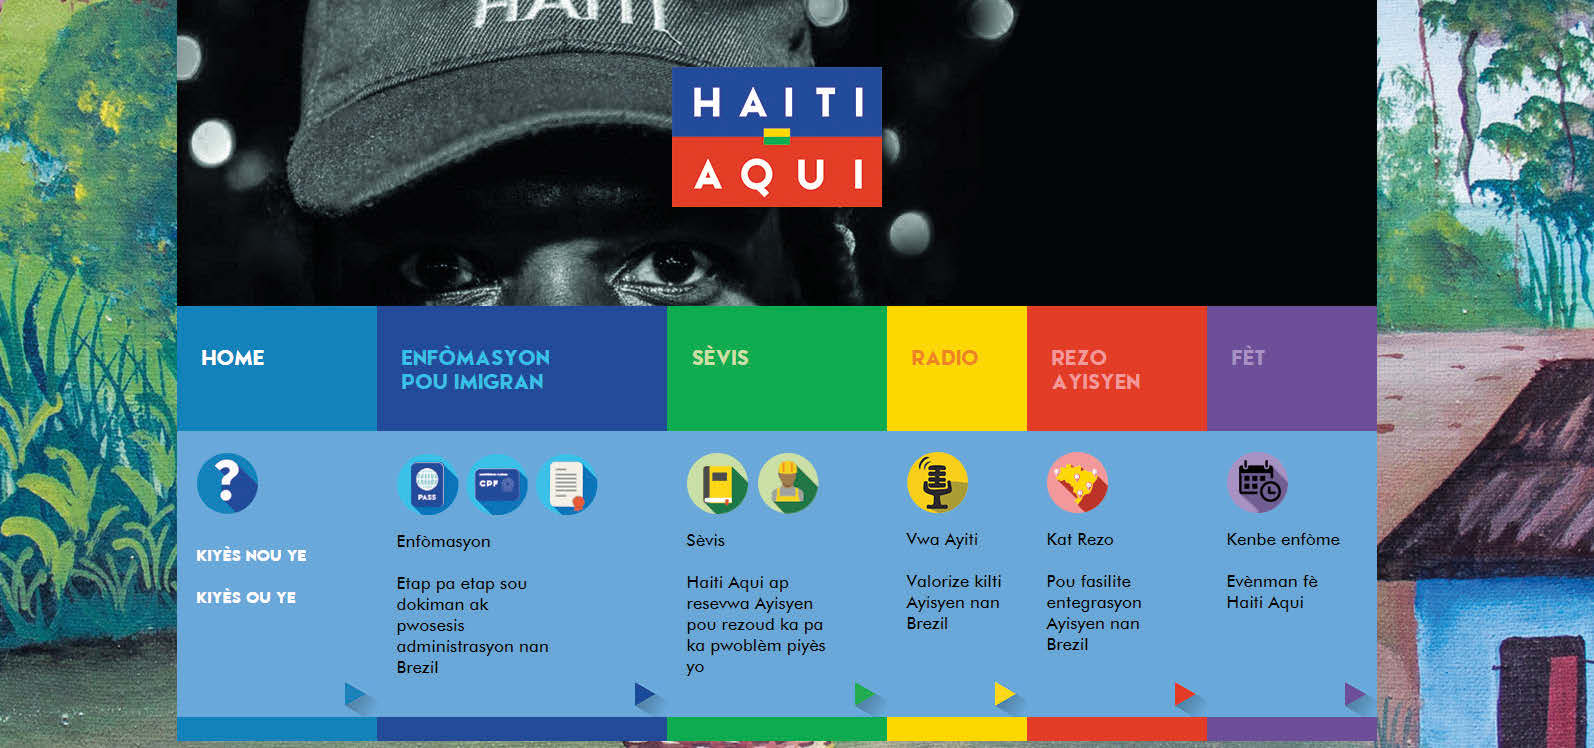 HAITI AQUI Haiti Aqui Pou plis enfòmasyon : www.haitiaqui.com www.facebook.com/ayitiaqui Pwojè Haiti Aqui, se yon pwojè Viva Rio mete sou pye pou fasilite entegrasyon migran Ayisyen nan peyi Brezil.